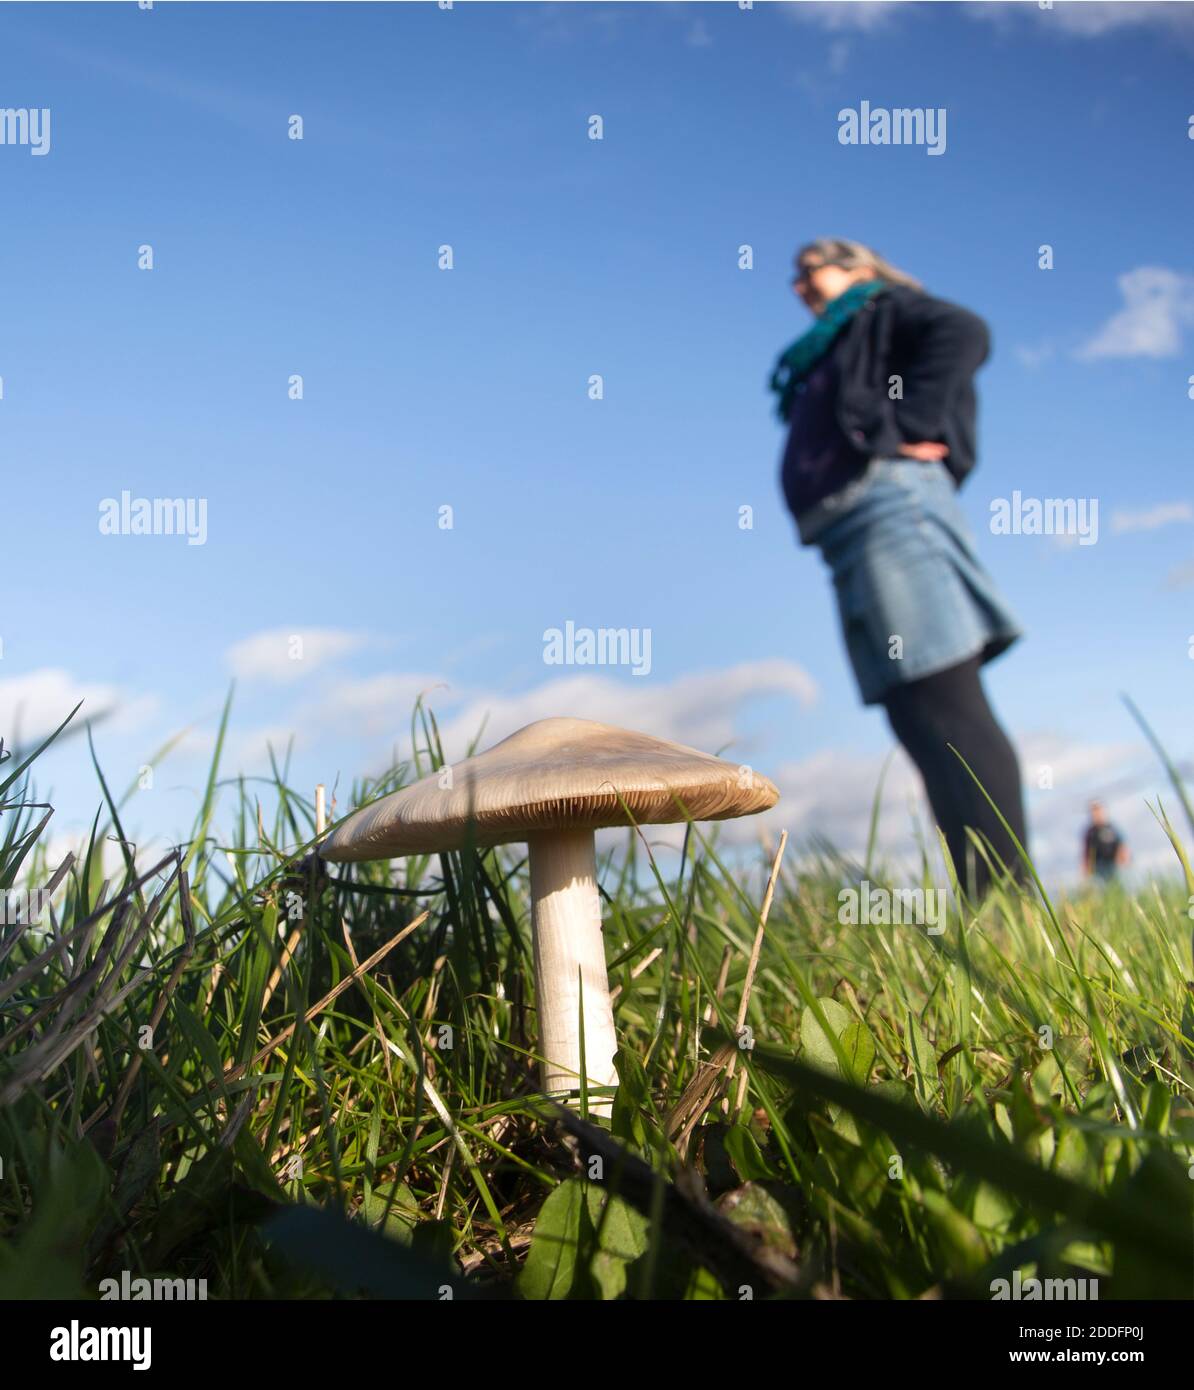 Vista ad angolo basso del fungo di campo, Agaricus campestris, che cresce in erba con cielo blu gente sfocata in piedi sopra Foto Stock